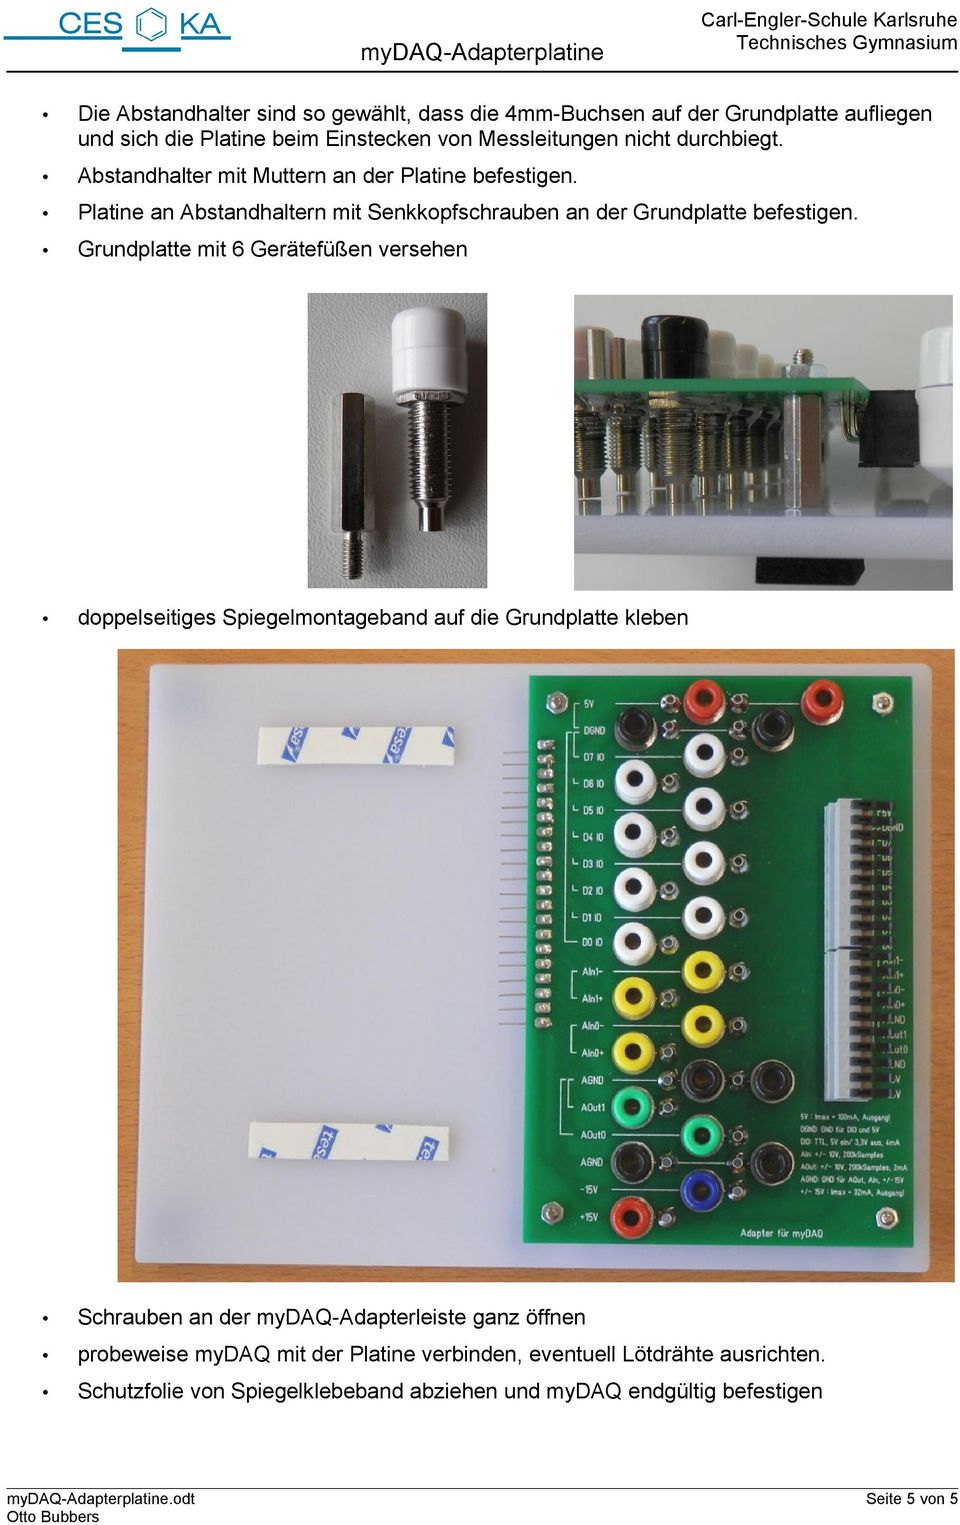 Grundplatte mit 6 Gerätefüßen versehen doppelseitiges Spiegelmontageband auf die Grundplatte kleben Schrauben an der mydaq-adapterleiste ganz öffnen